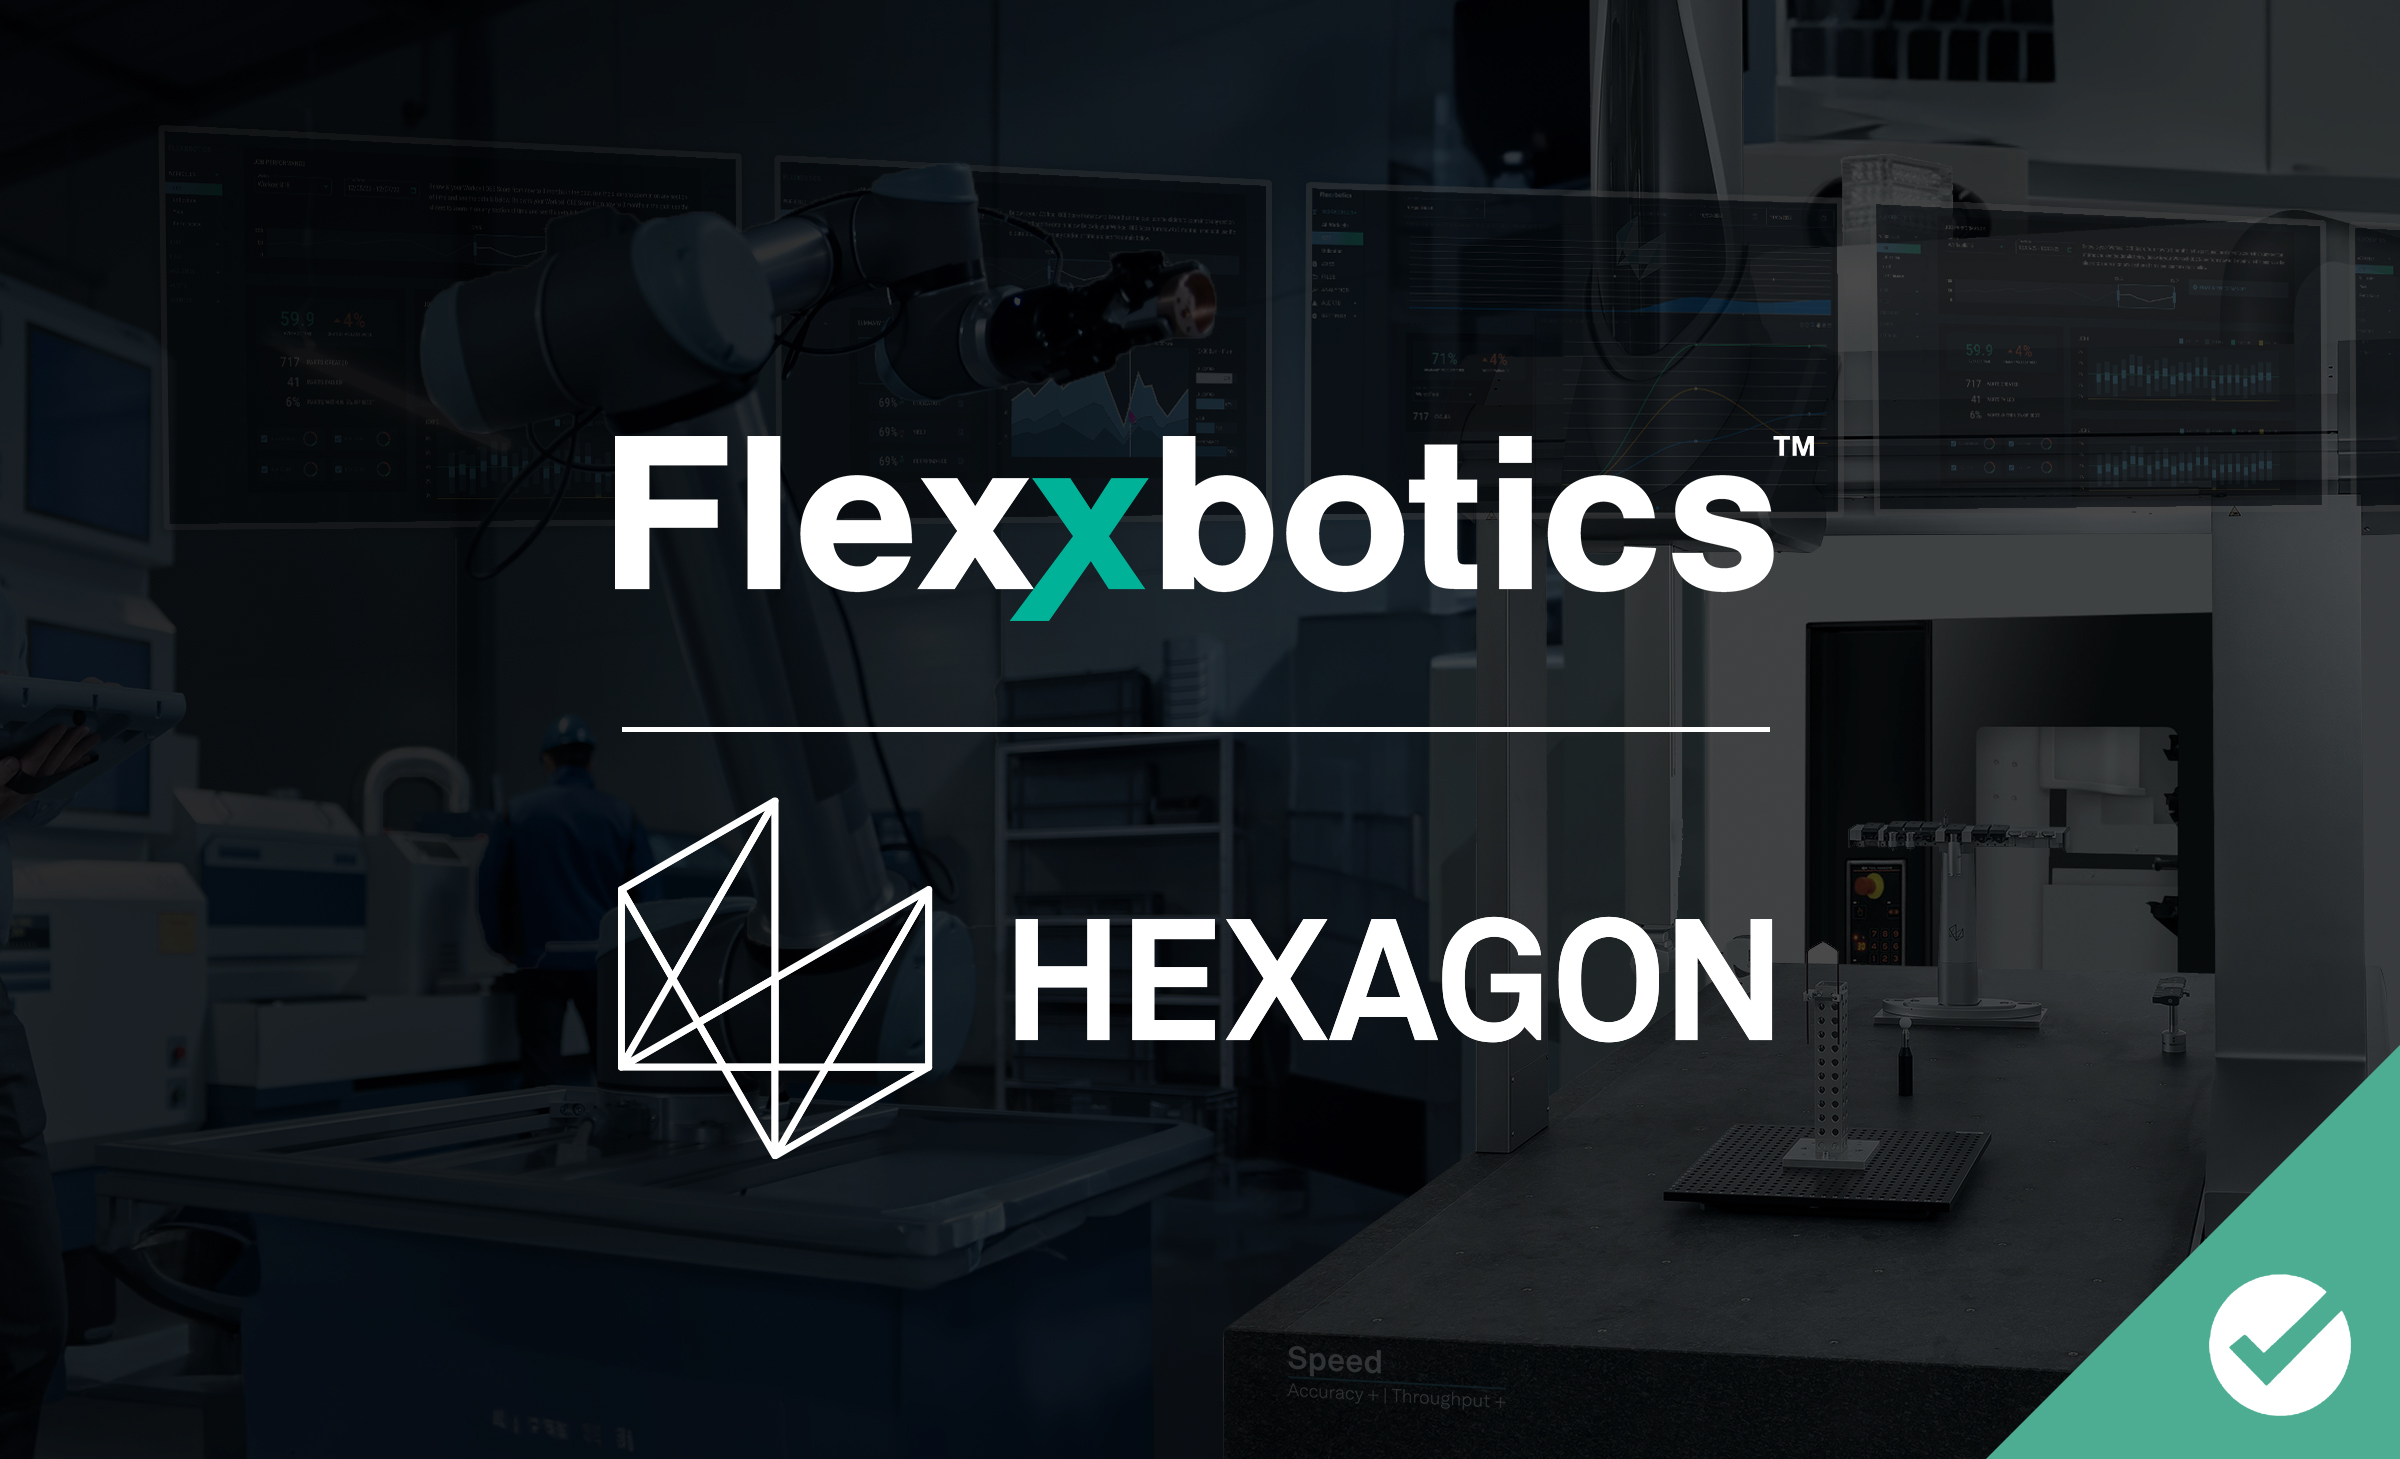 Flexxbotics Hexagon Compatibility